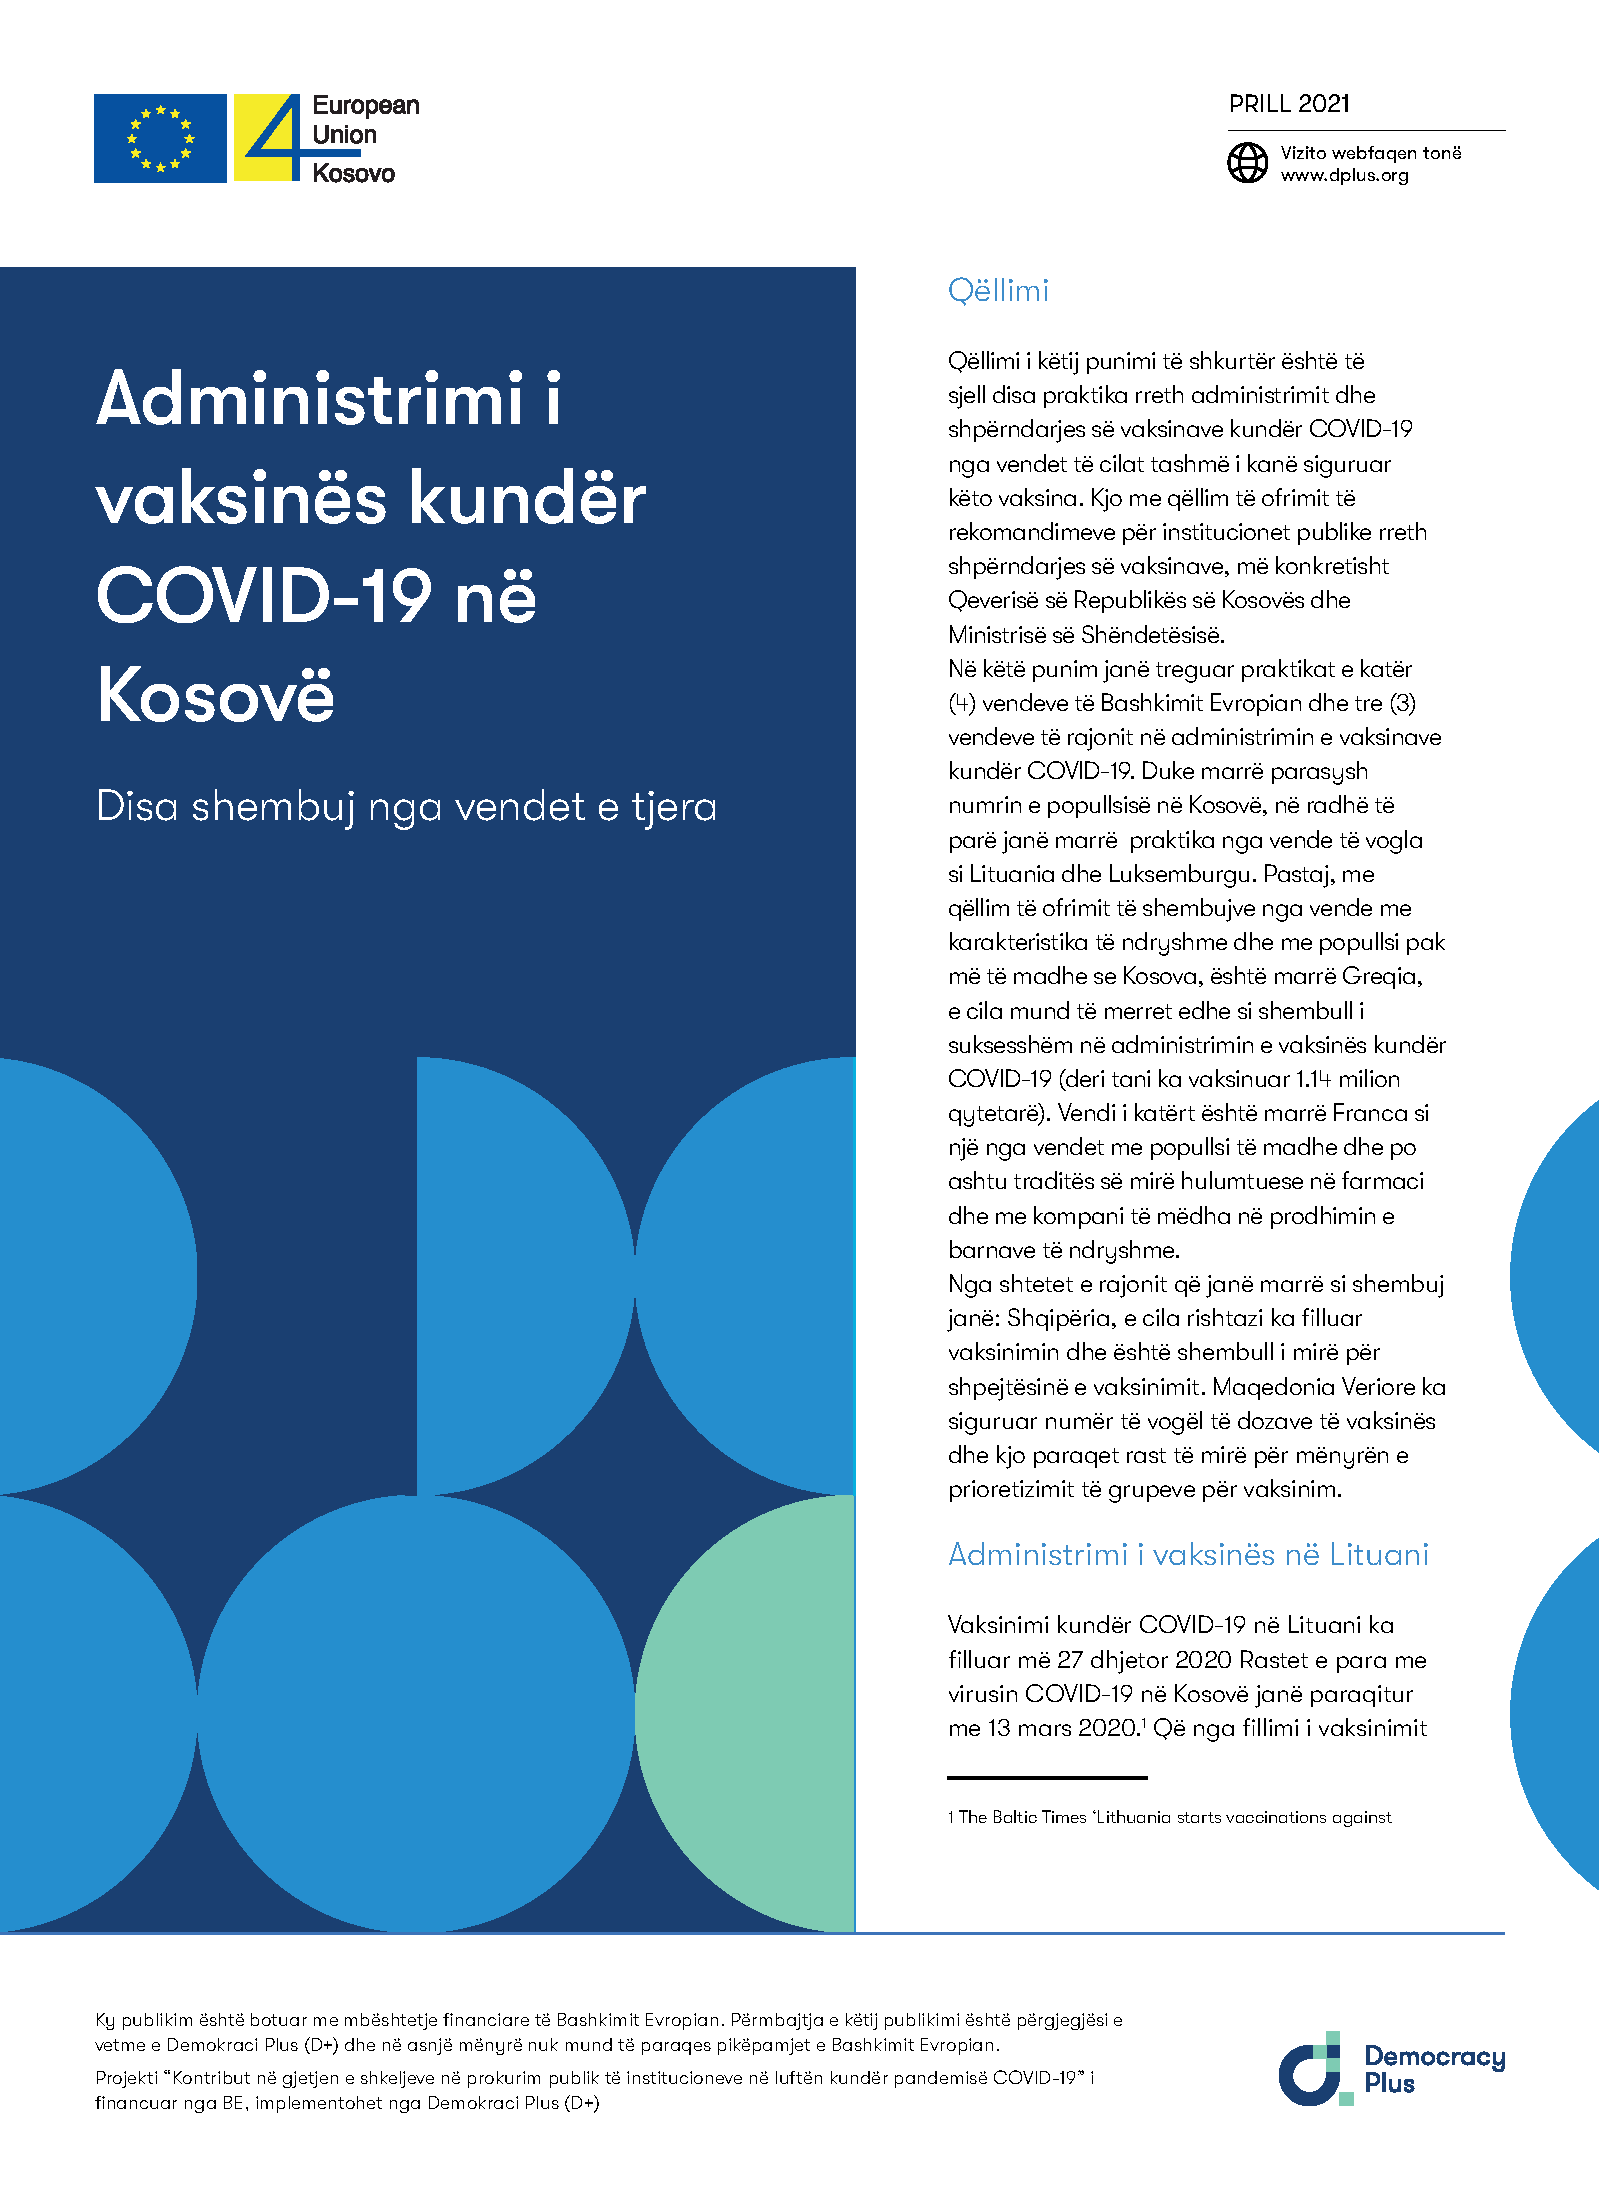 Administrimi i vaksinës kundër COVID-19 në Kosovë